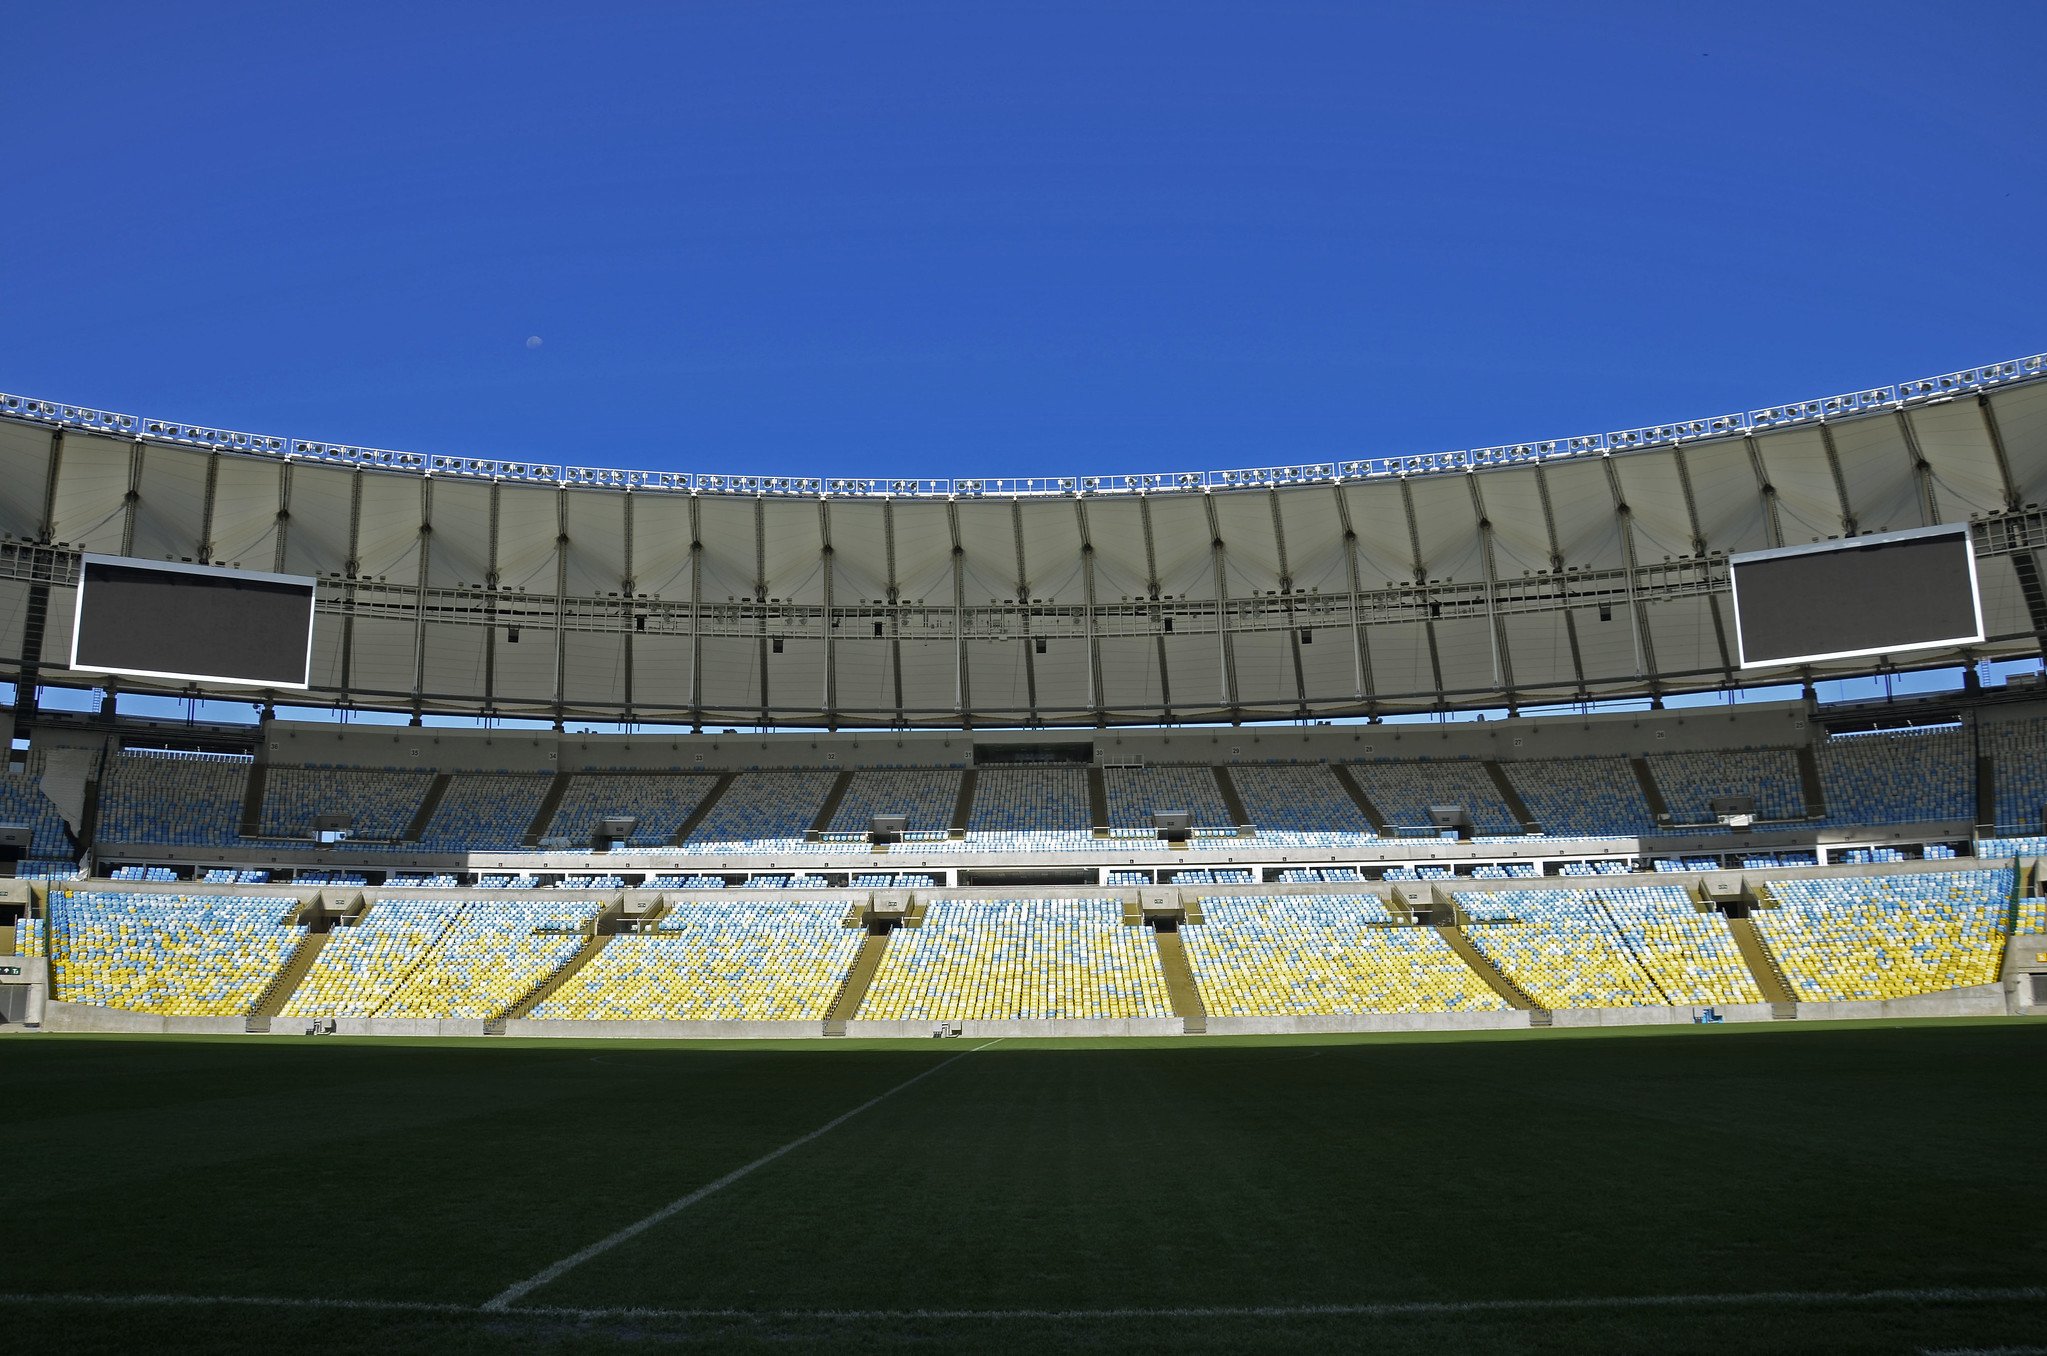 Contra o São Paulo, Palmeiras terá mando de campo da final única